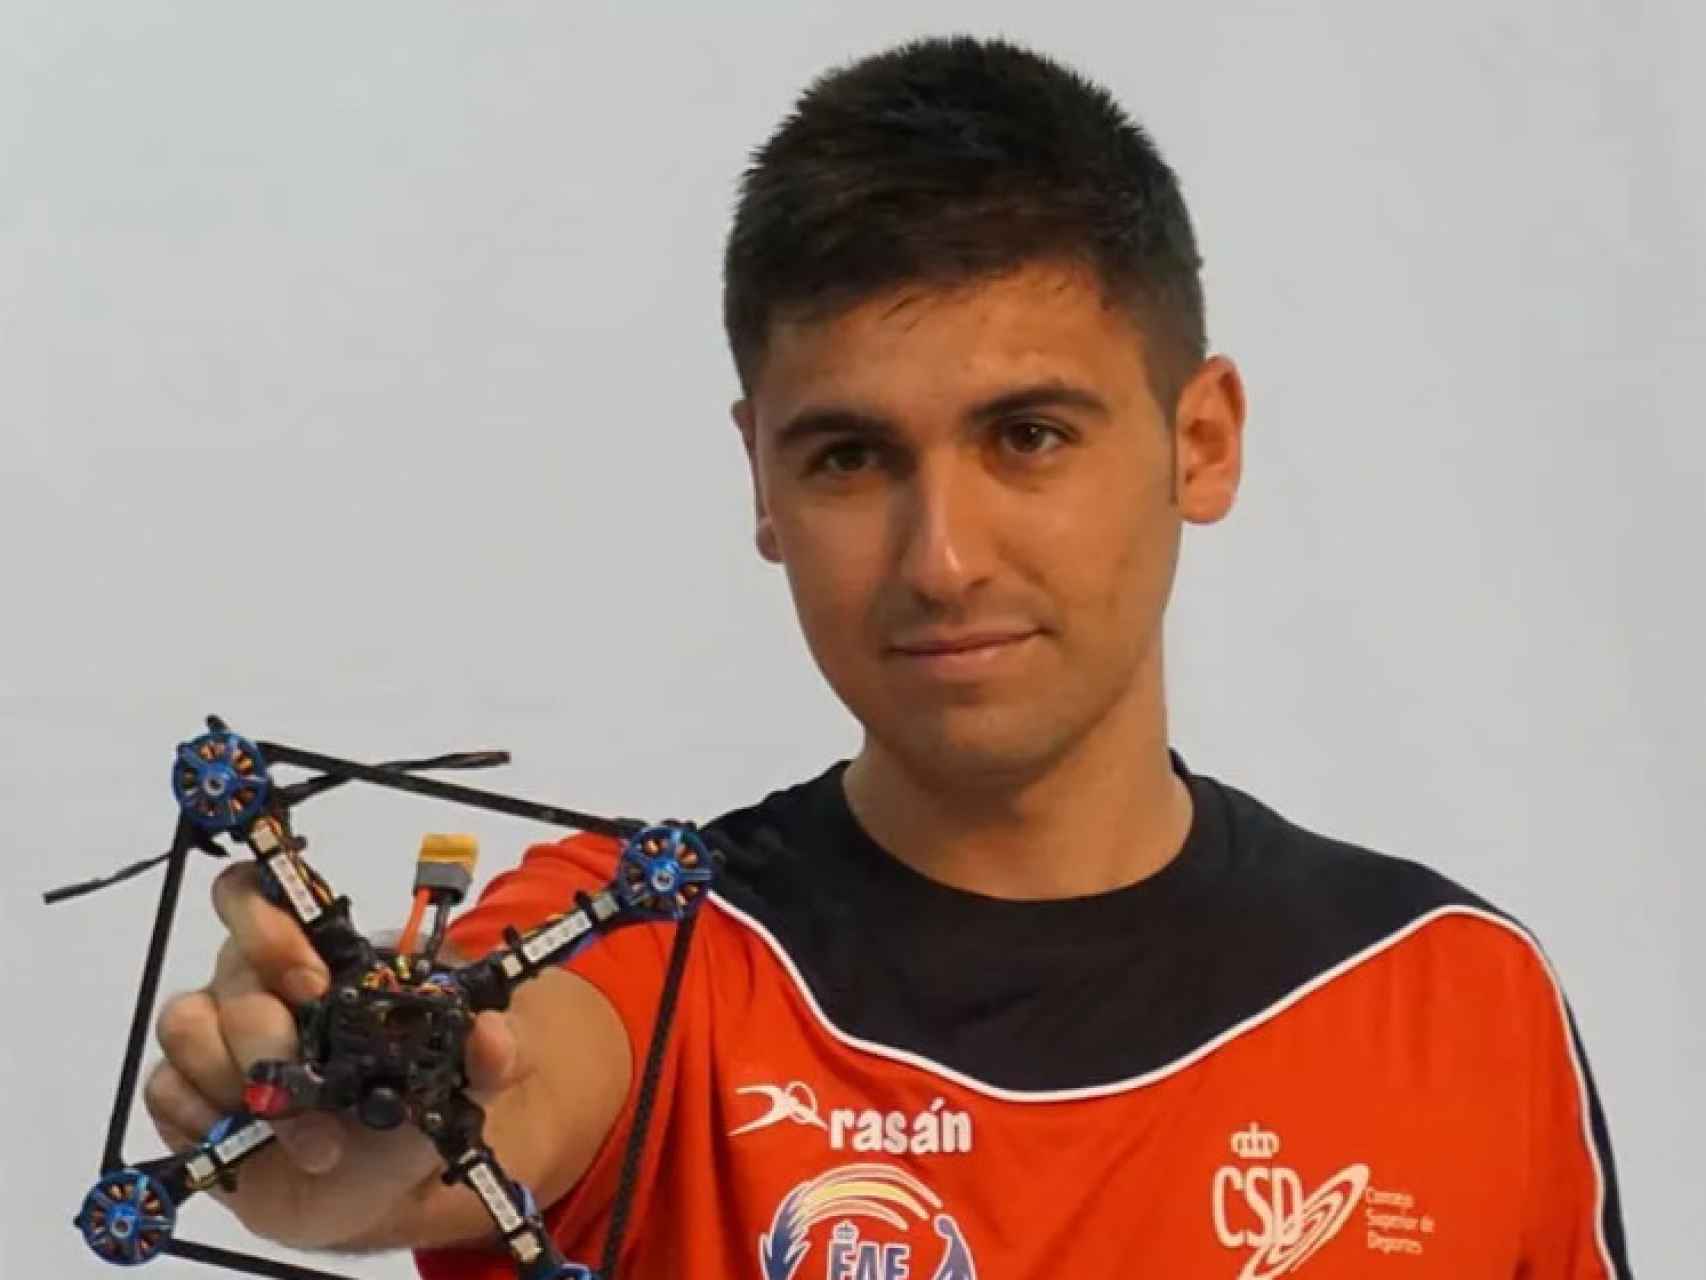 El piloto de drones Iván Merino.